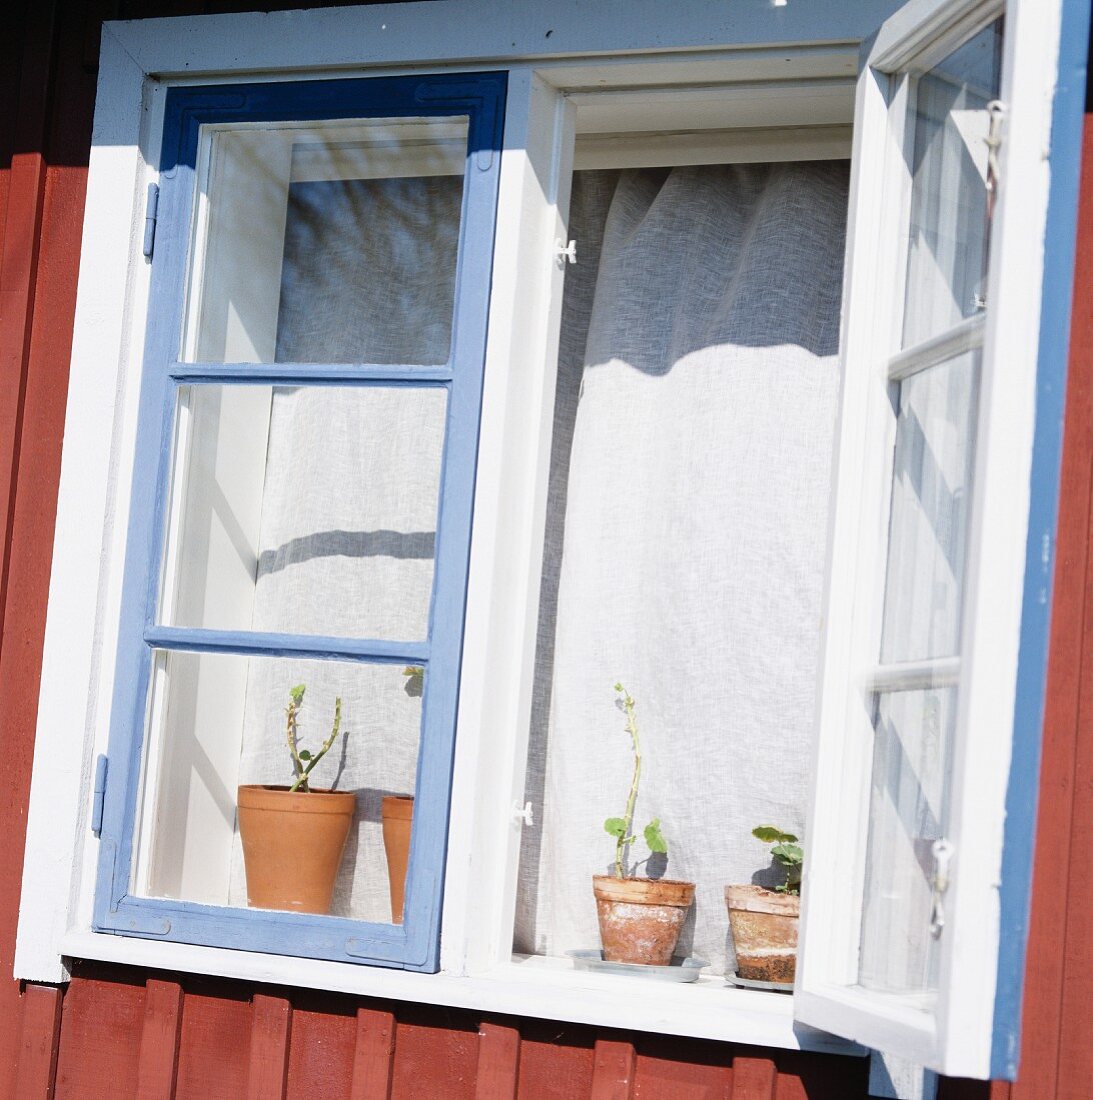 An open window, Skane, Sweden.